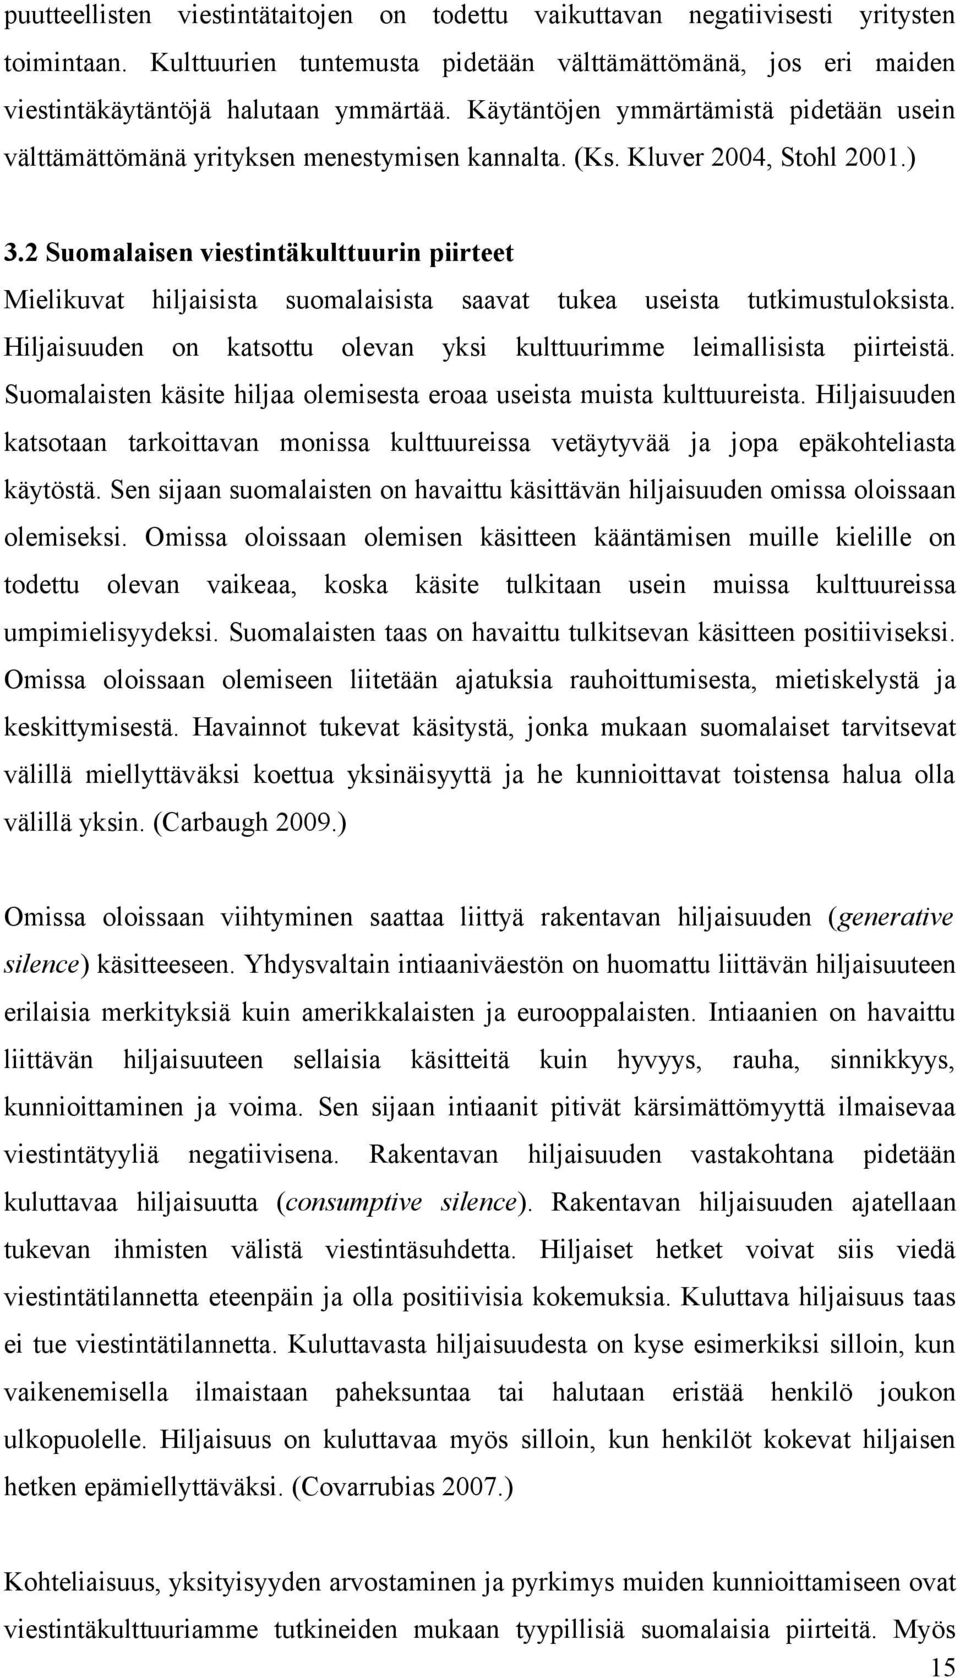 2 Suomalaisen viestintäkulttuurin piirteet Mielikuvat hiljaisista suomalaisista saavat tukea useista tutkimustuloksista. Hiljaisuuden on katsottu olevan yksi kulttuurimme leimallisista piirteistä.